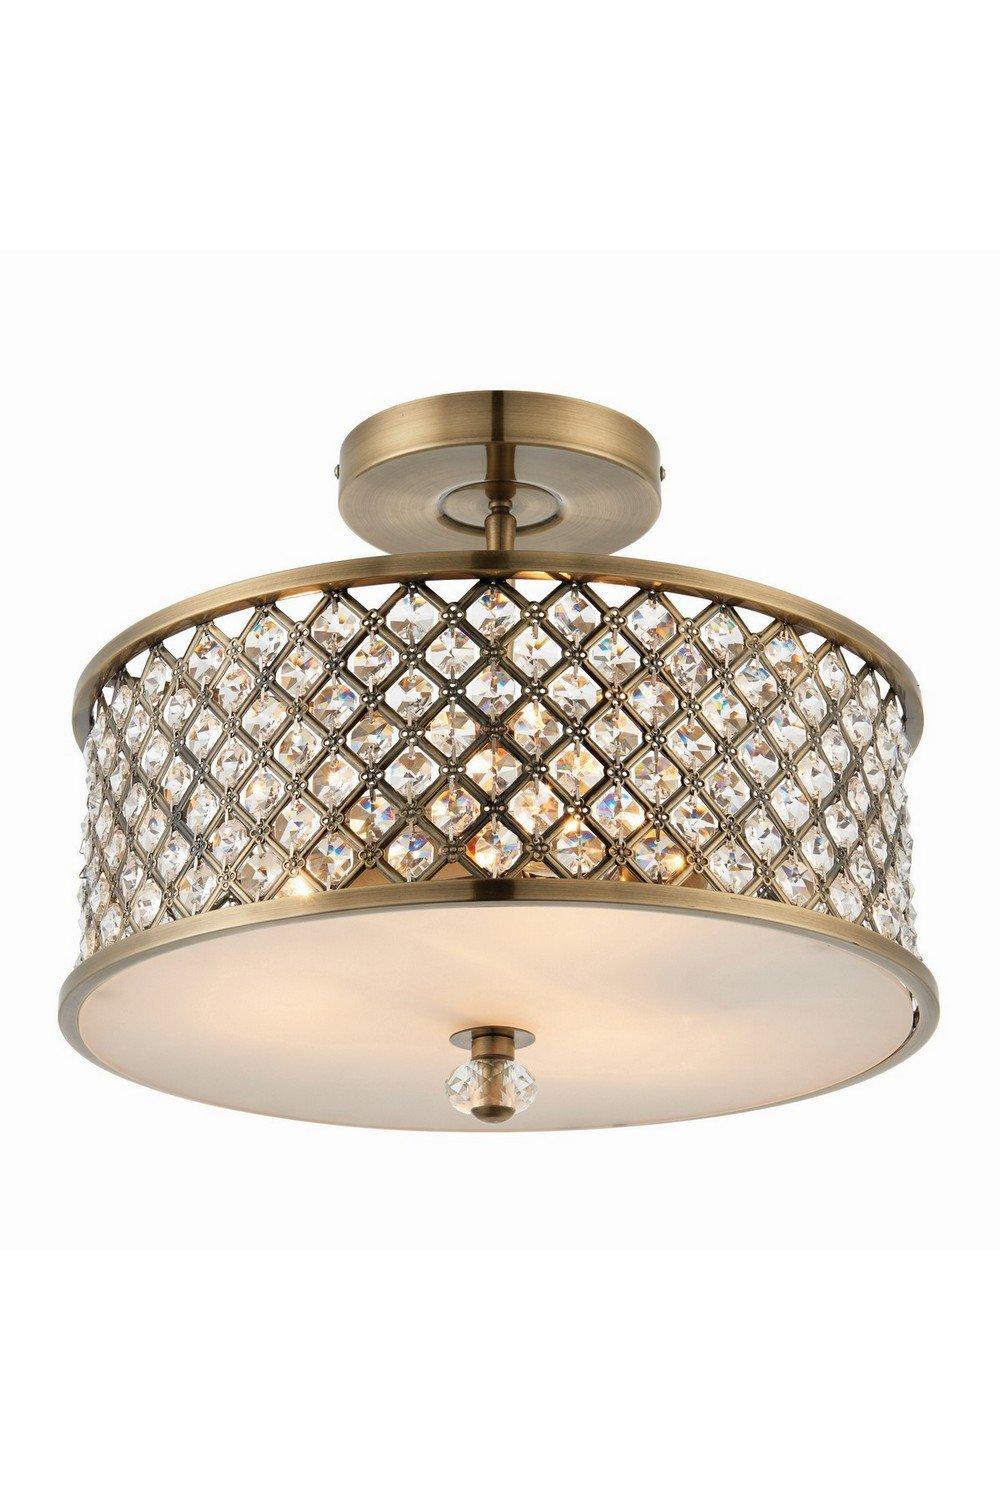 Hudson 3 Light Flush Ceiling Light Antique Brass Crystal E27